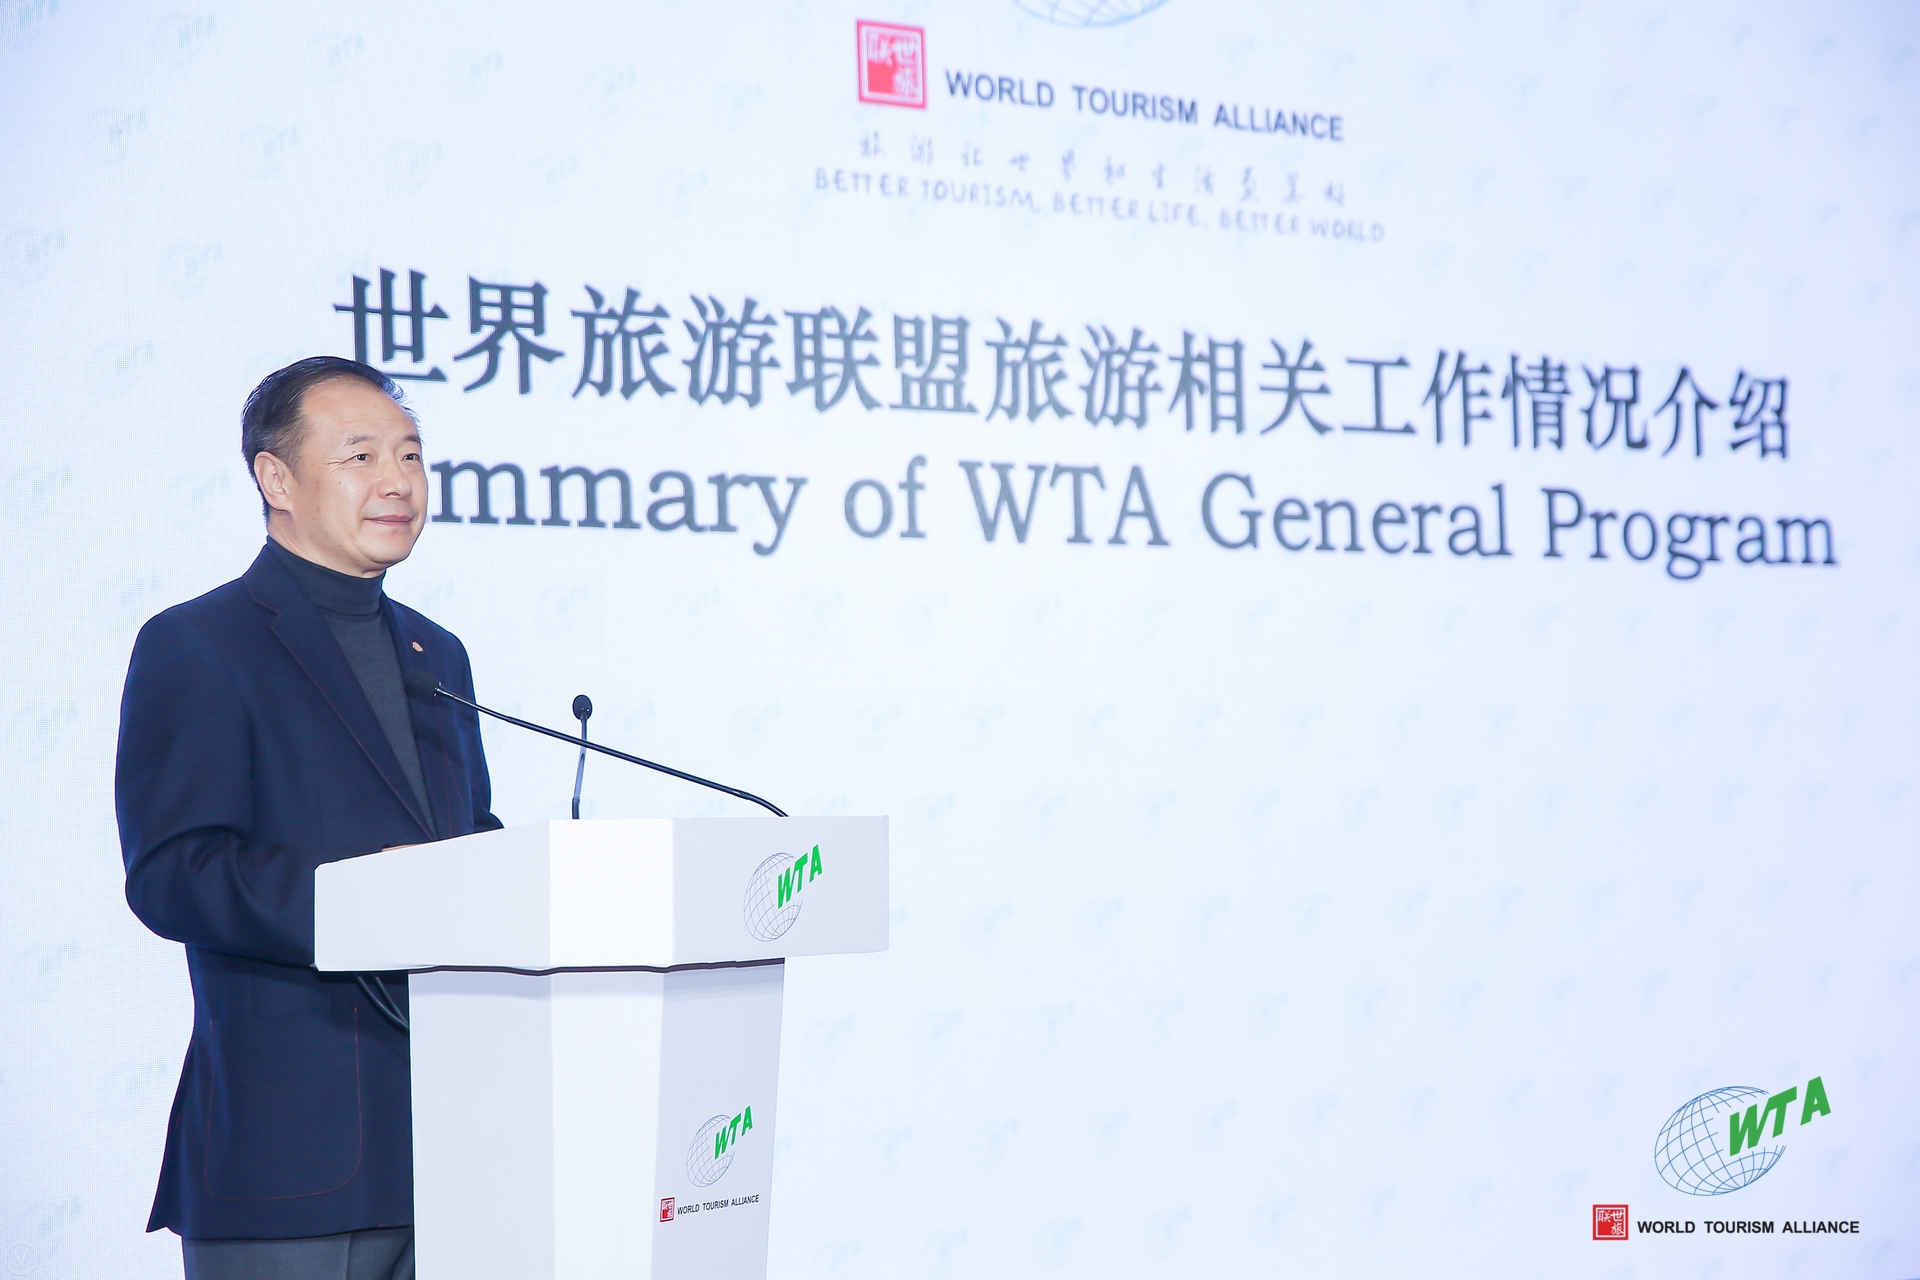 Liu Shijun, Secretary-General of WTA